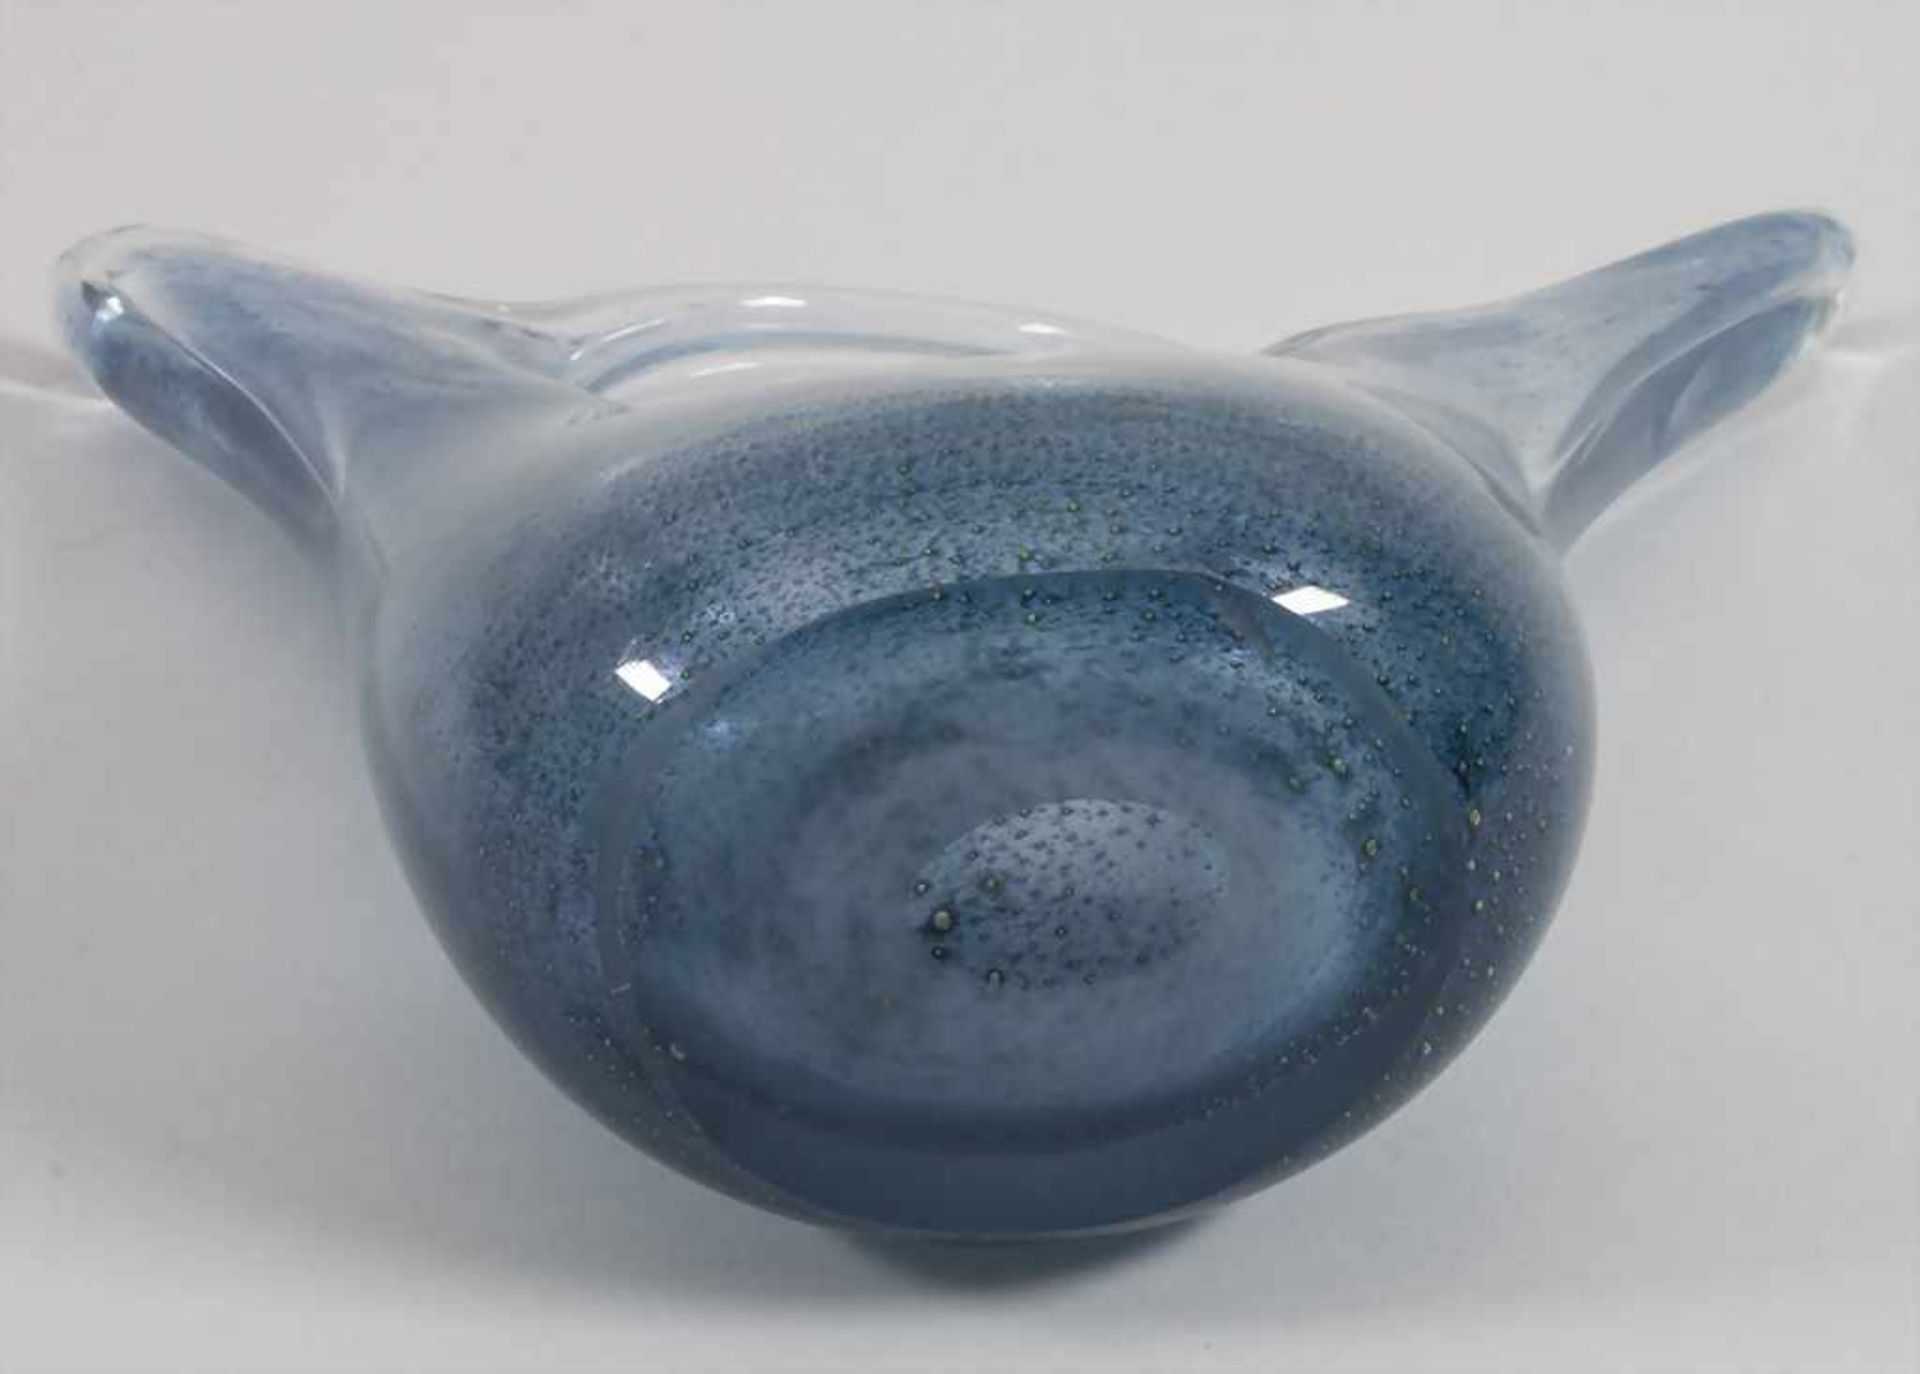 Glasziervase 'Cobalto' / A decorative vase 'Cobalto', Barovier & Toso, Entw. Ercole Barovier, - Image 6 of 7